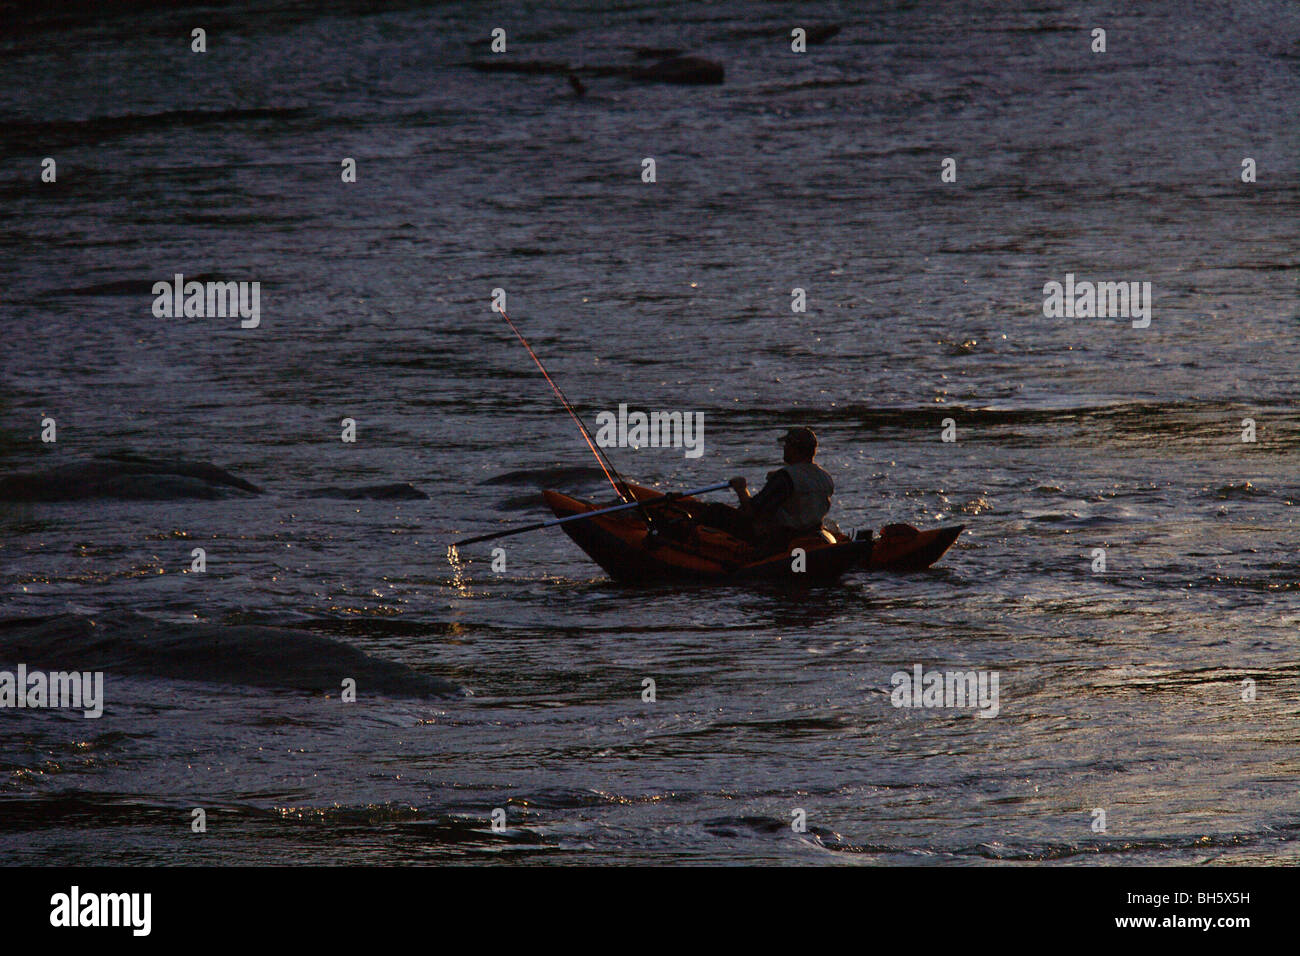 Pescador con mosca Pontoon Boat inflable de remo en el río GEORGIA NINGÚN MODELO BOTES DE LIBERACIÓN Foto de stock